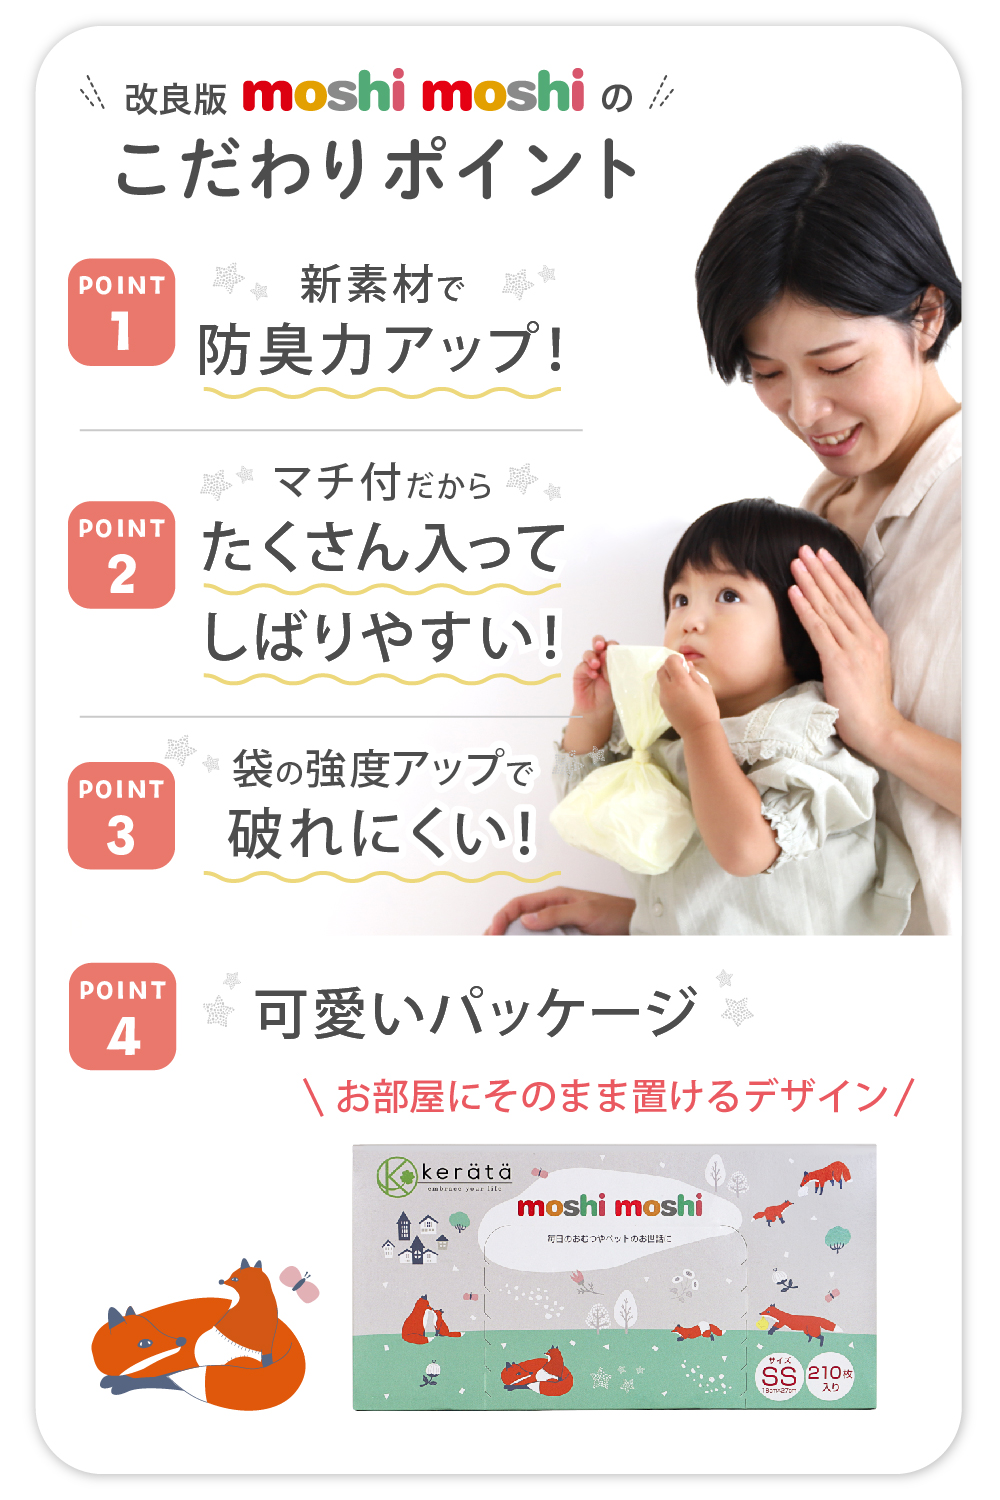 [ улучшение версия ](kelata) moshimoshi подгузники дезодорация пакет SS запах . нет пакет ... нет дезодорация Homme tsu... младенец вставка имеется 